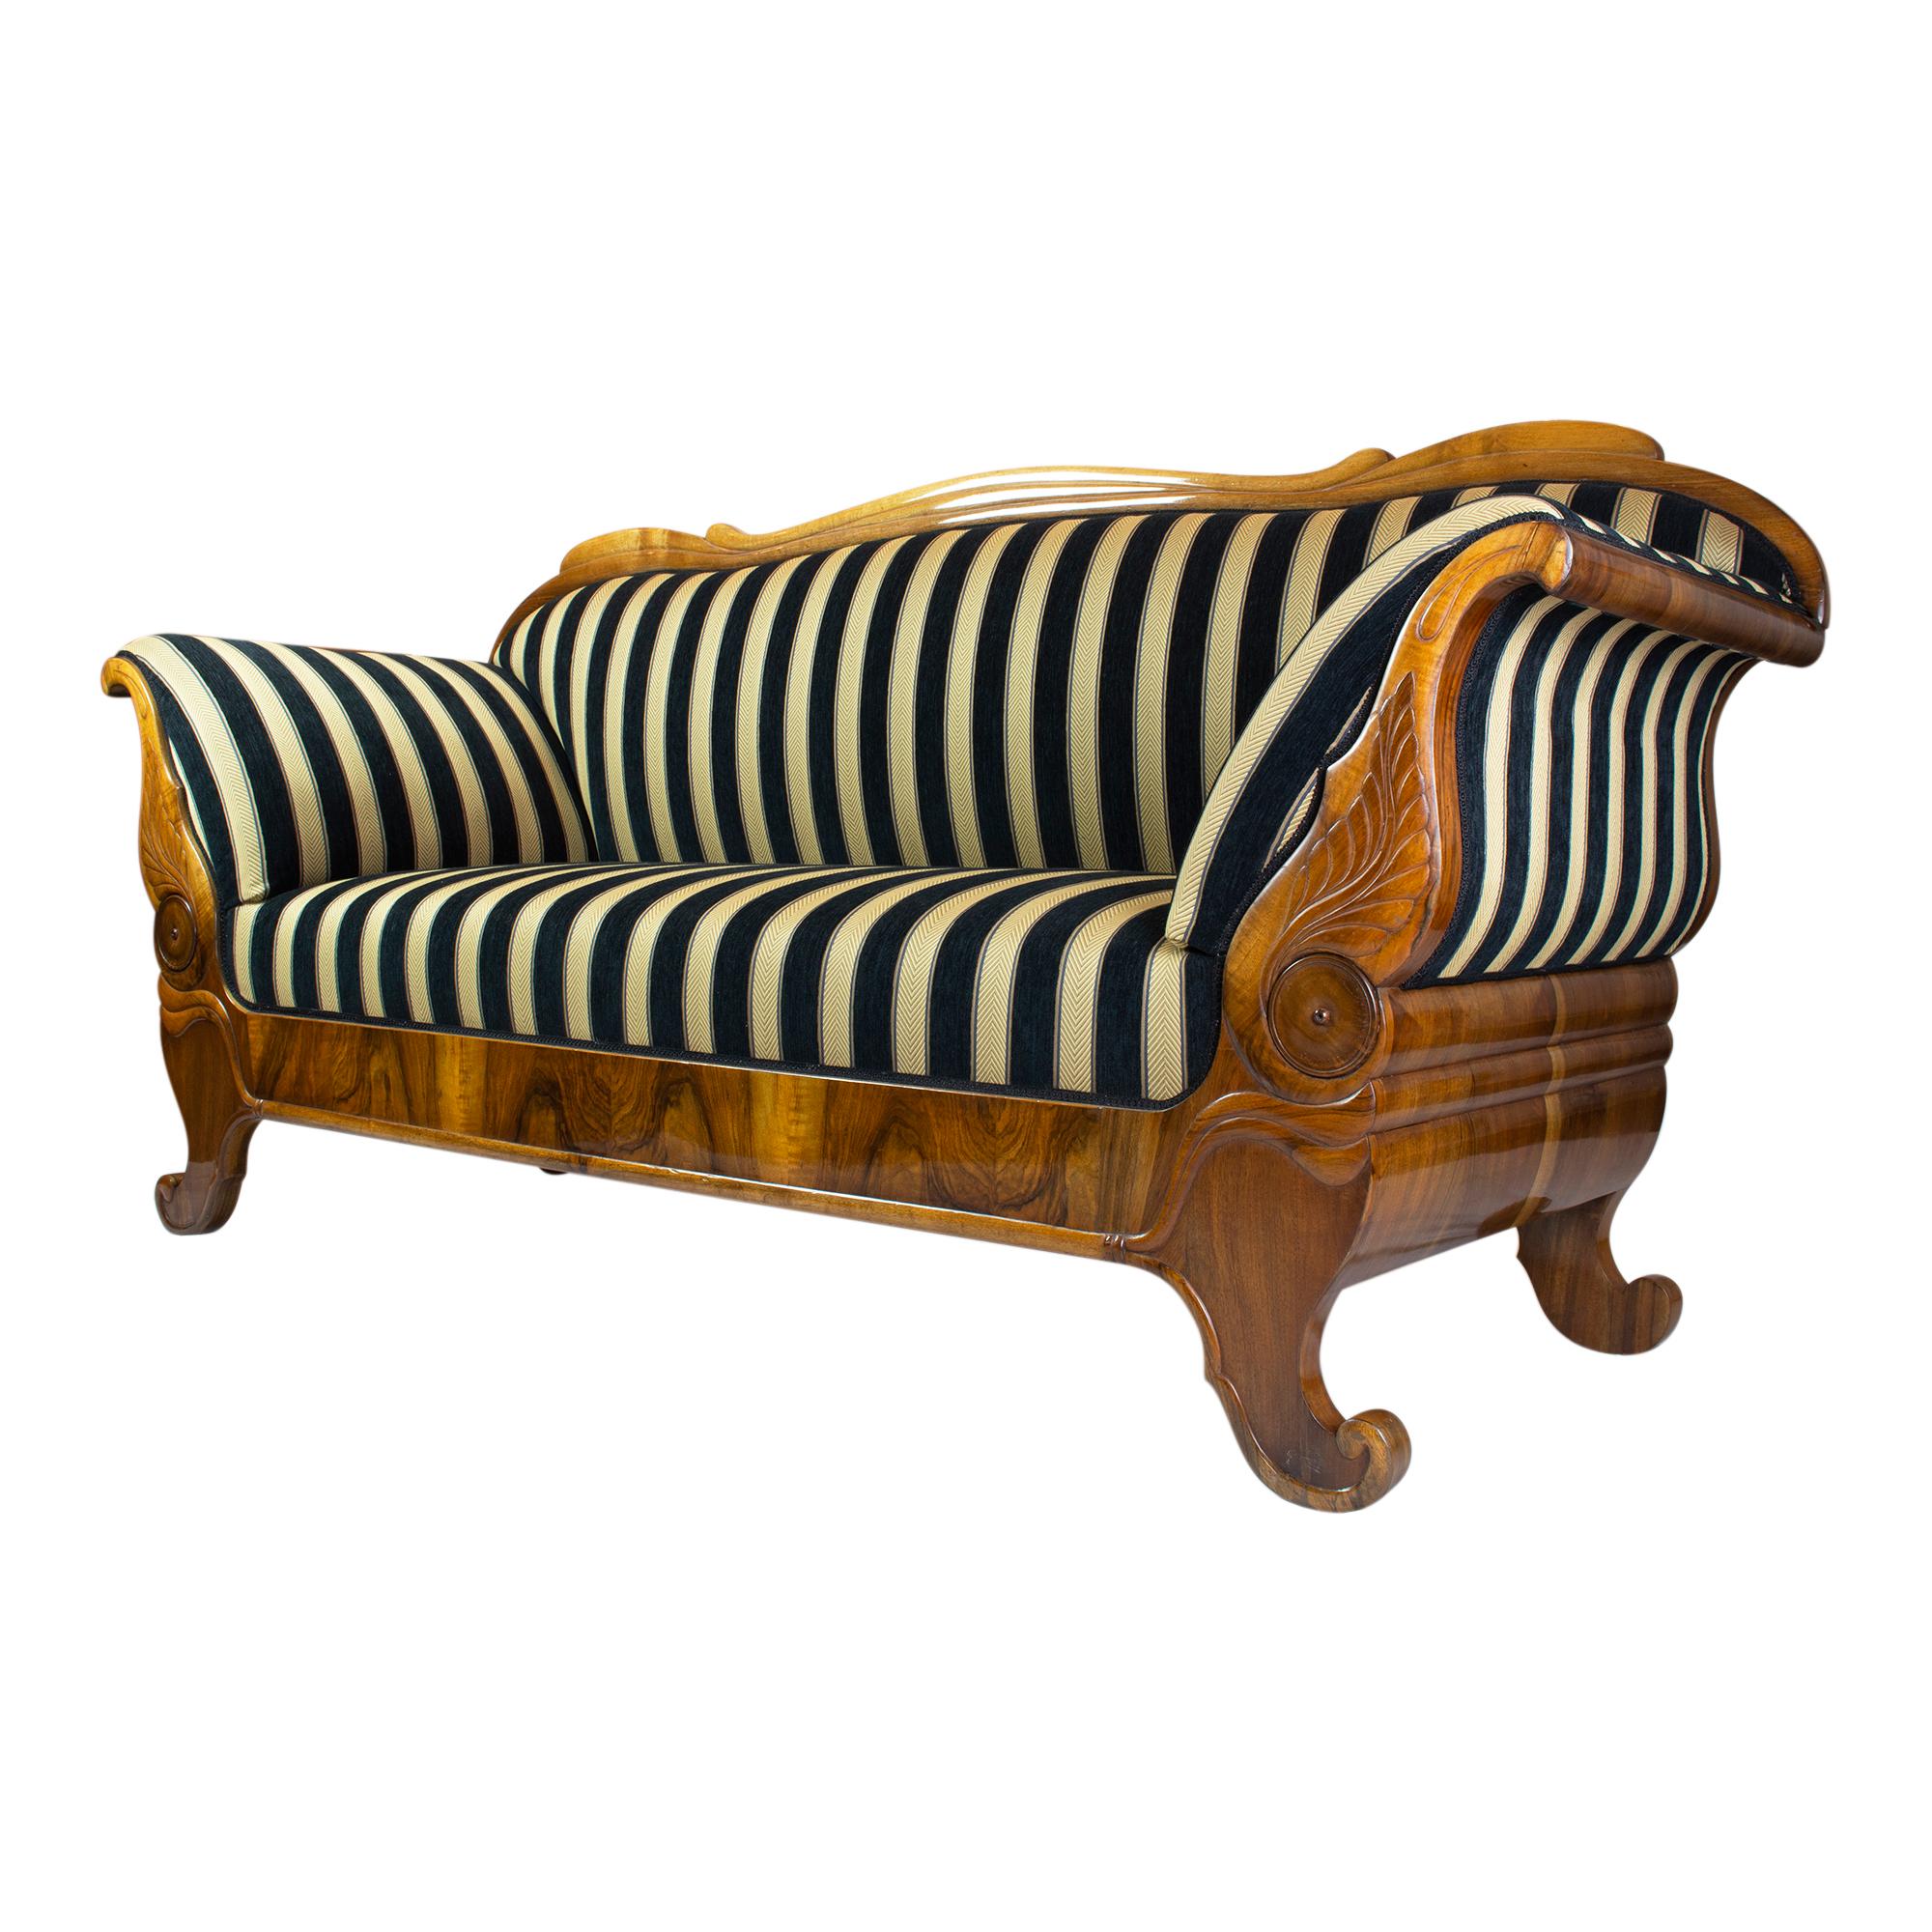 Das Biedermeier-Sofa aus der Zeit um 1825 ist ein echter Möbelklassiker. Er ist aus wunderschönem Walnussholz gefertigt und wurde von Hand mit Schellack poliert, um ein atemberaubendes Finish zu erzielen. Kürzlich mit einem neuen Biedermeier-Stoff